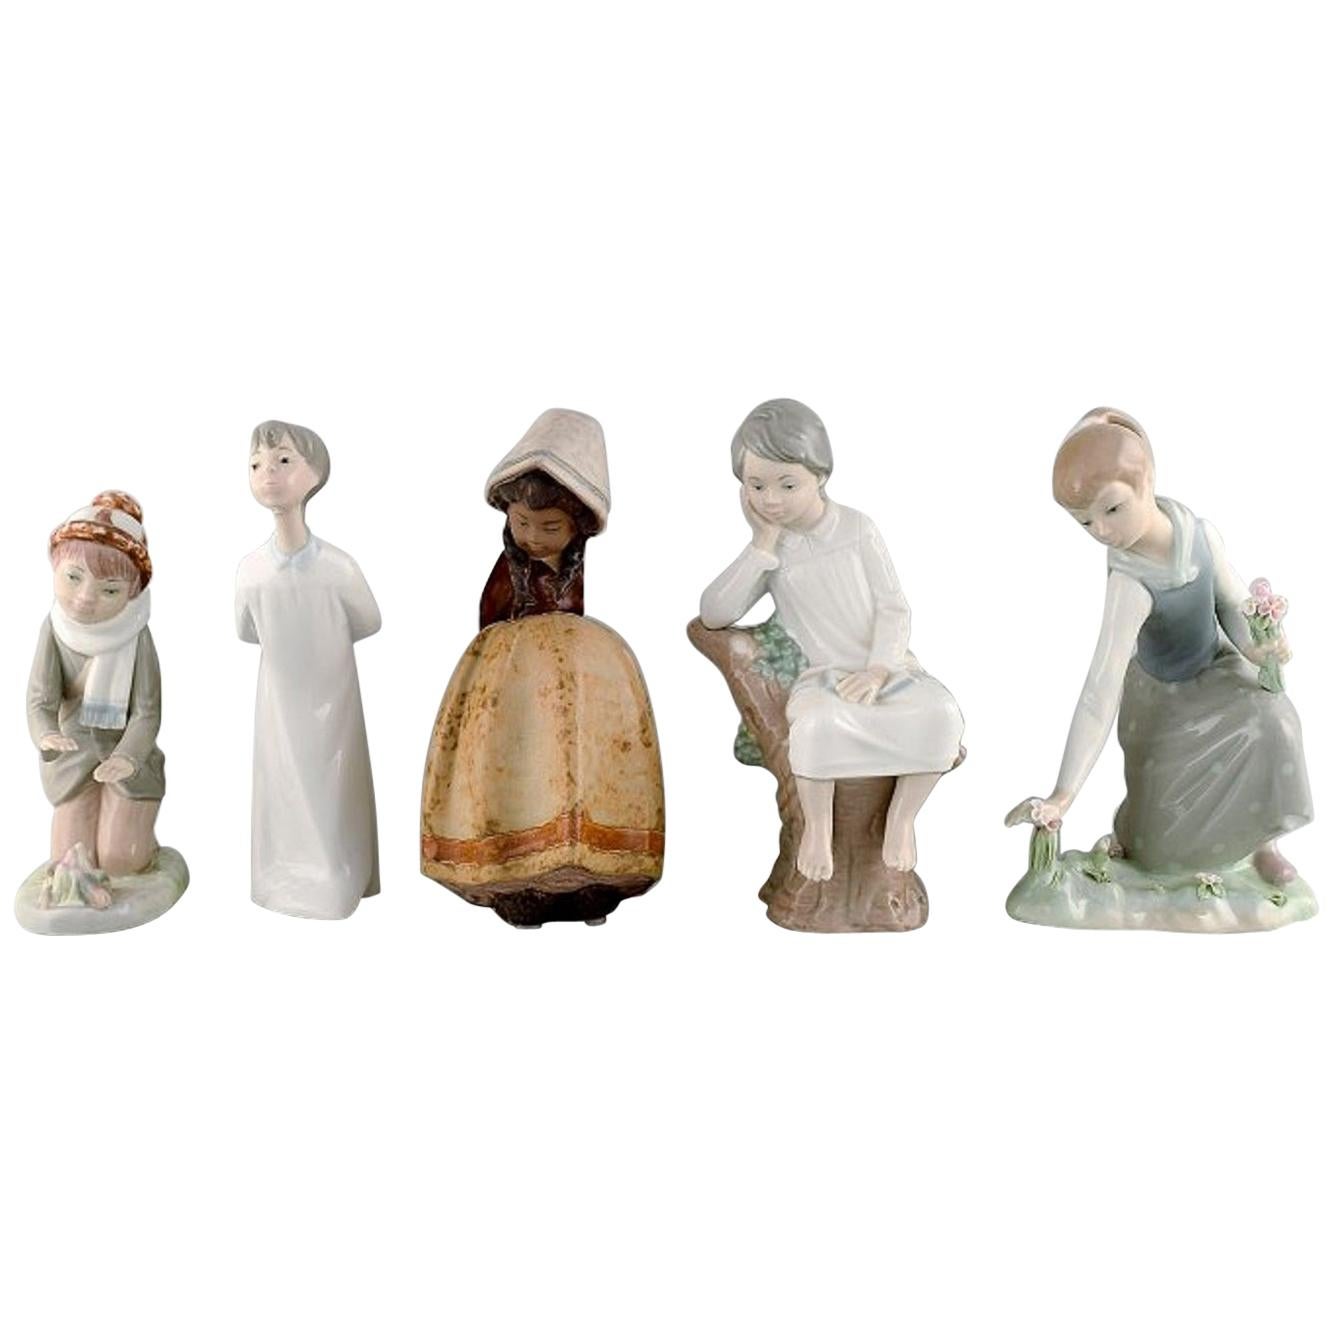 Cinq figurines d'enfants en porcelaine de Lladro, Nao et Zaphir, Espagne, années 1980-1990